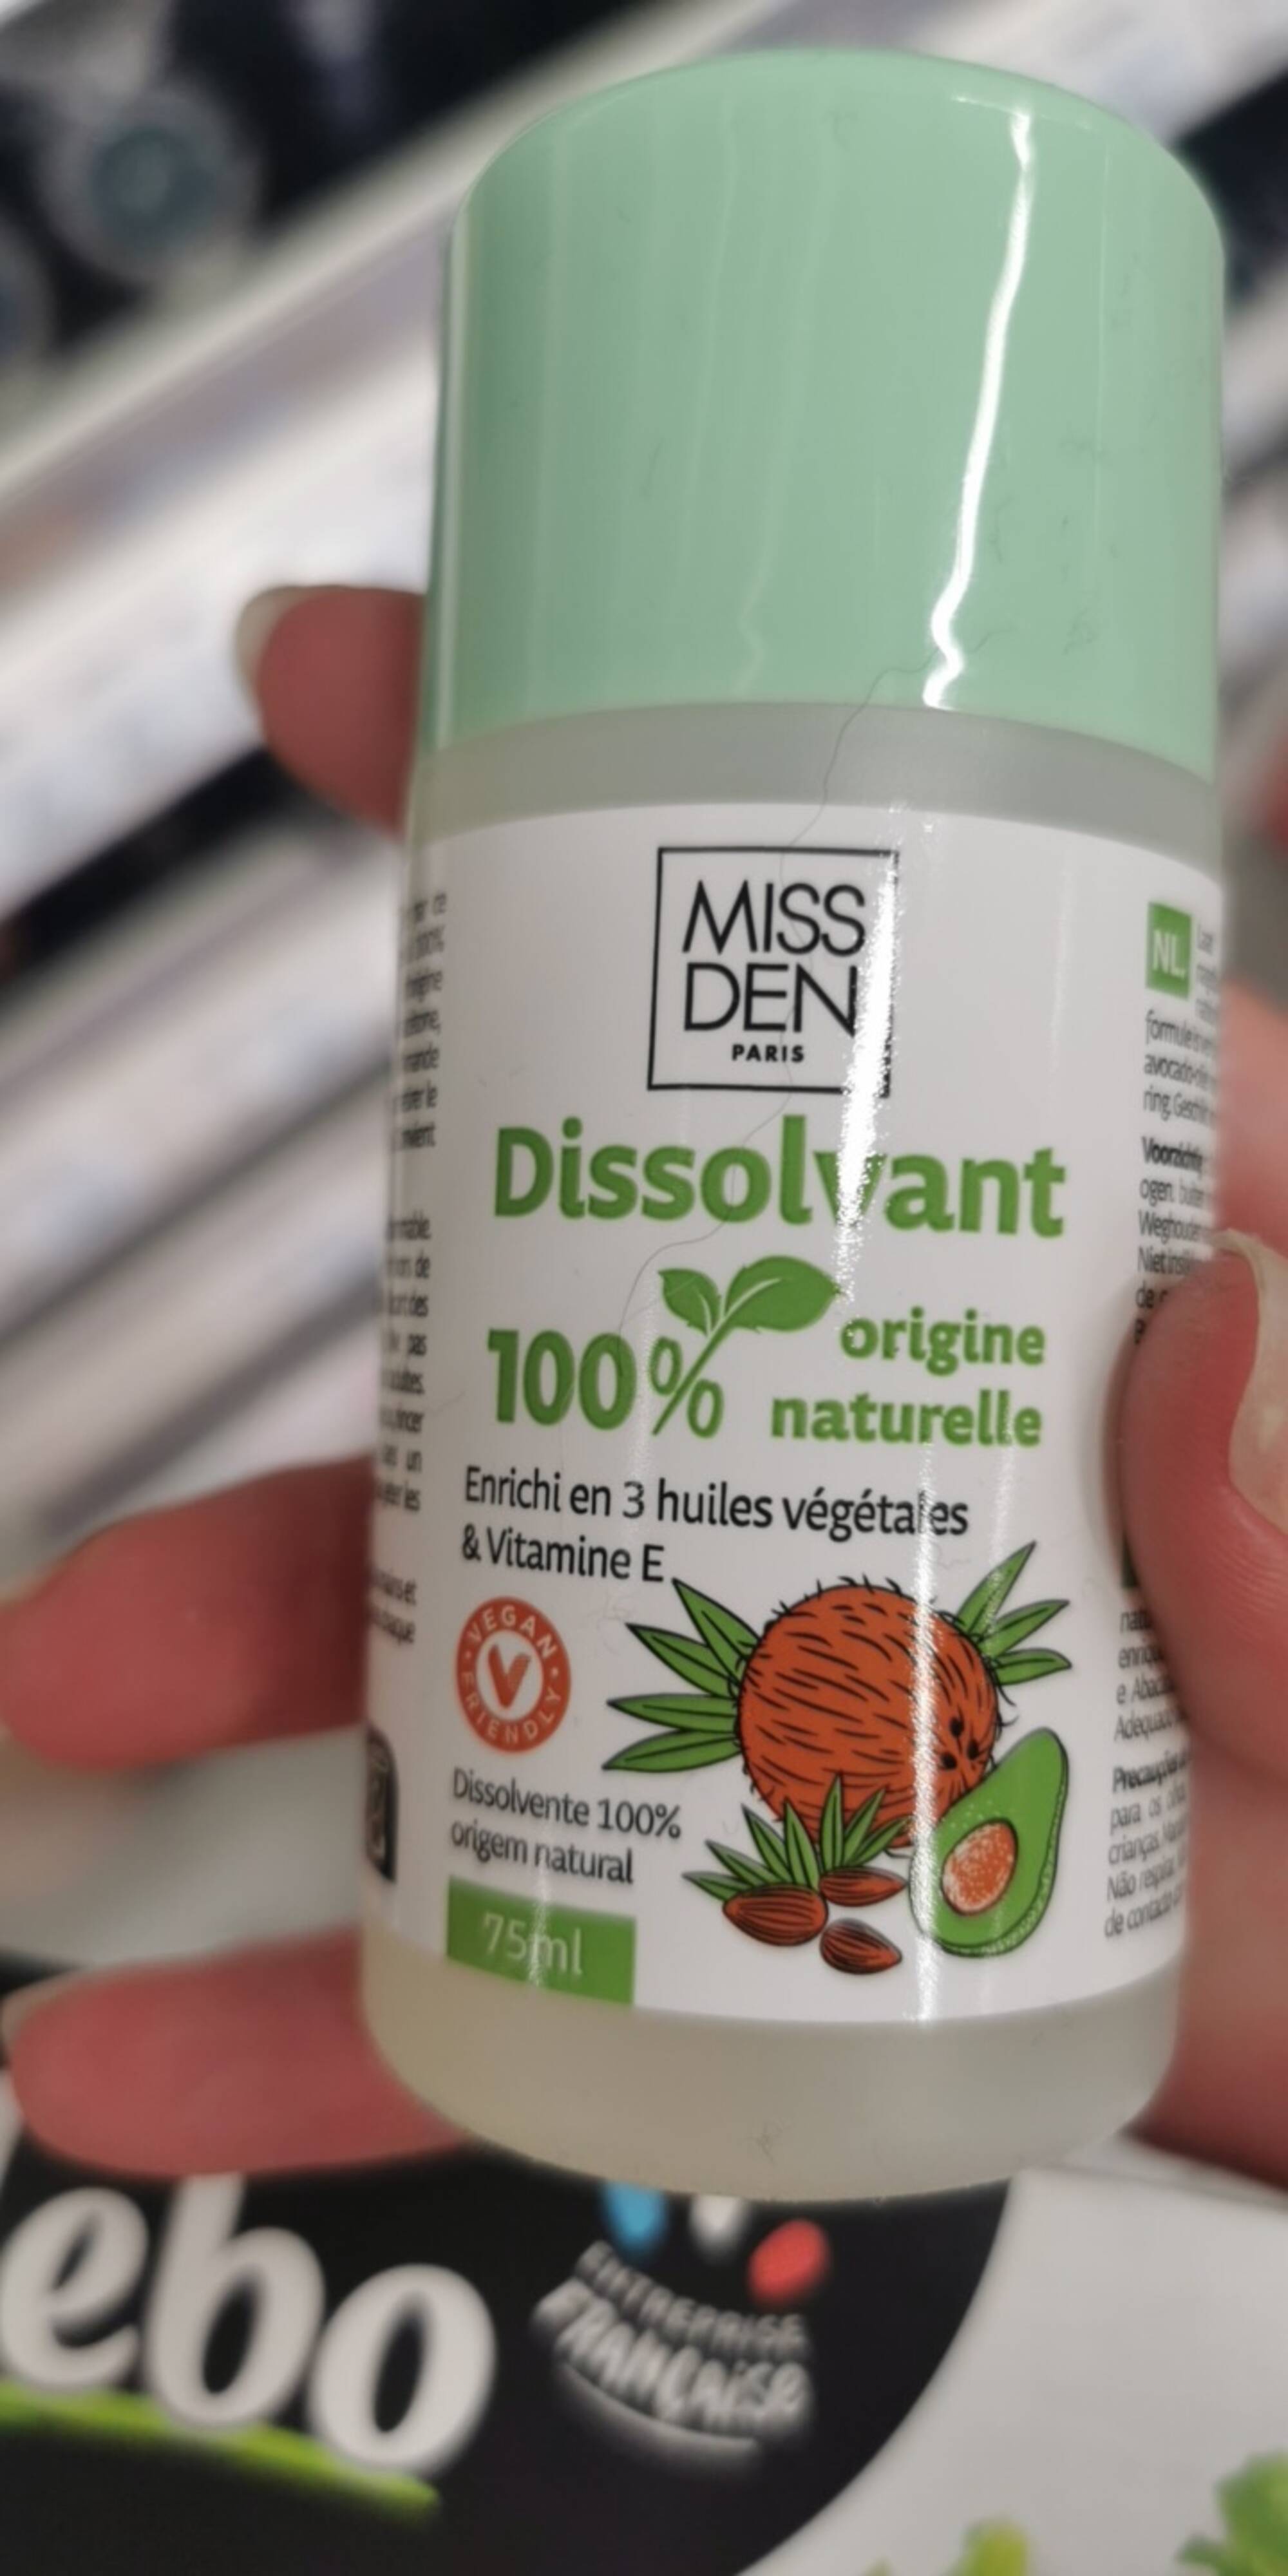 MISS DEN - Dissolvant 100% origine naturelle